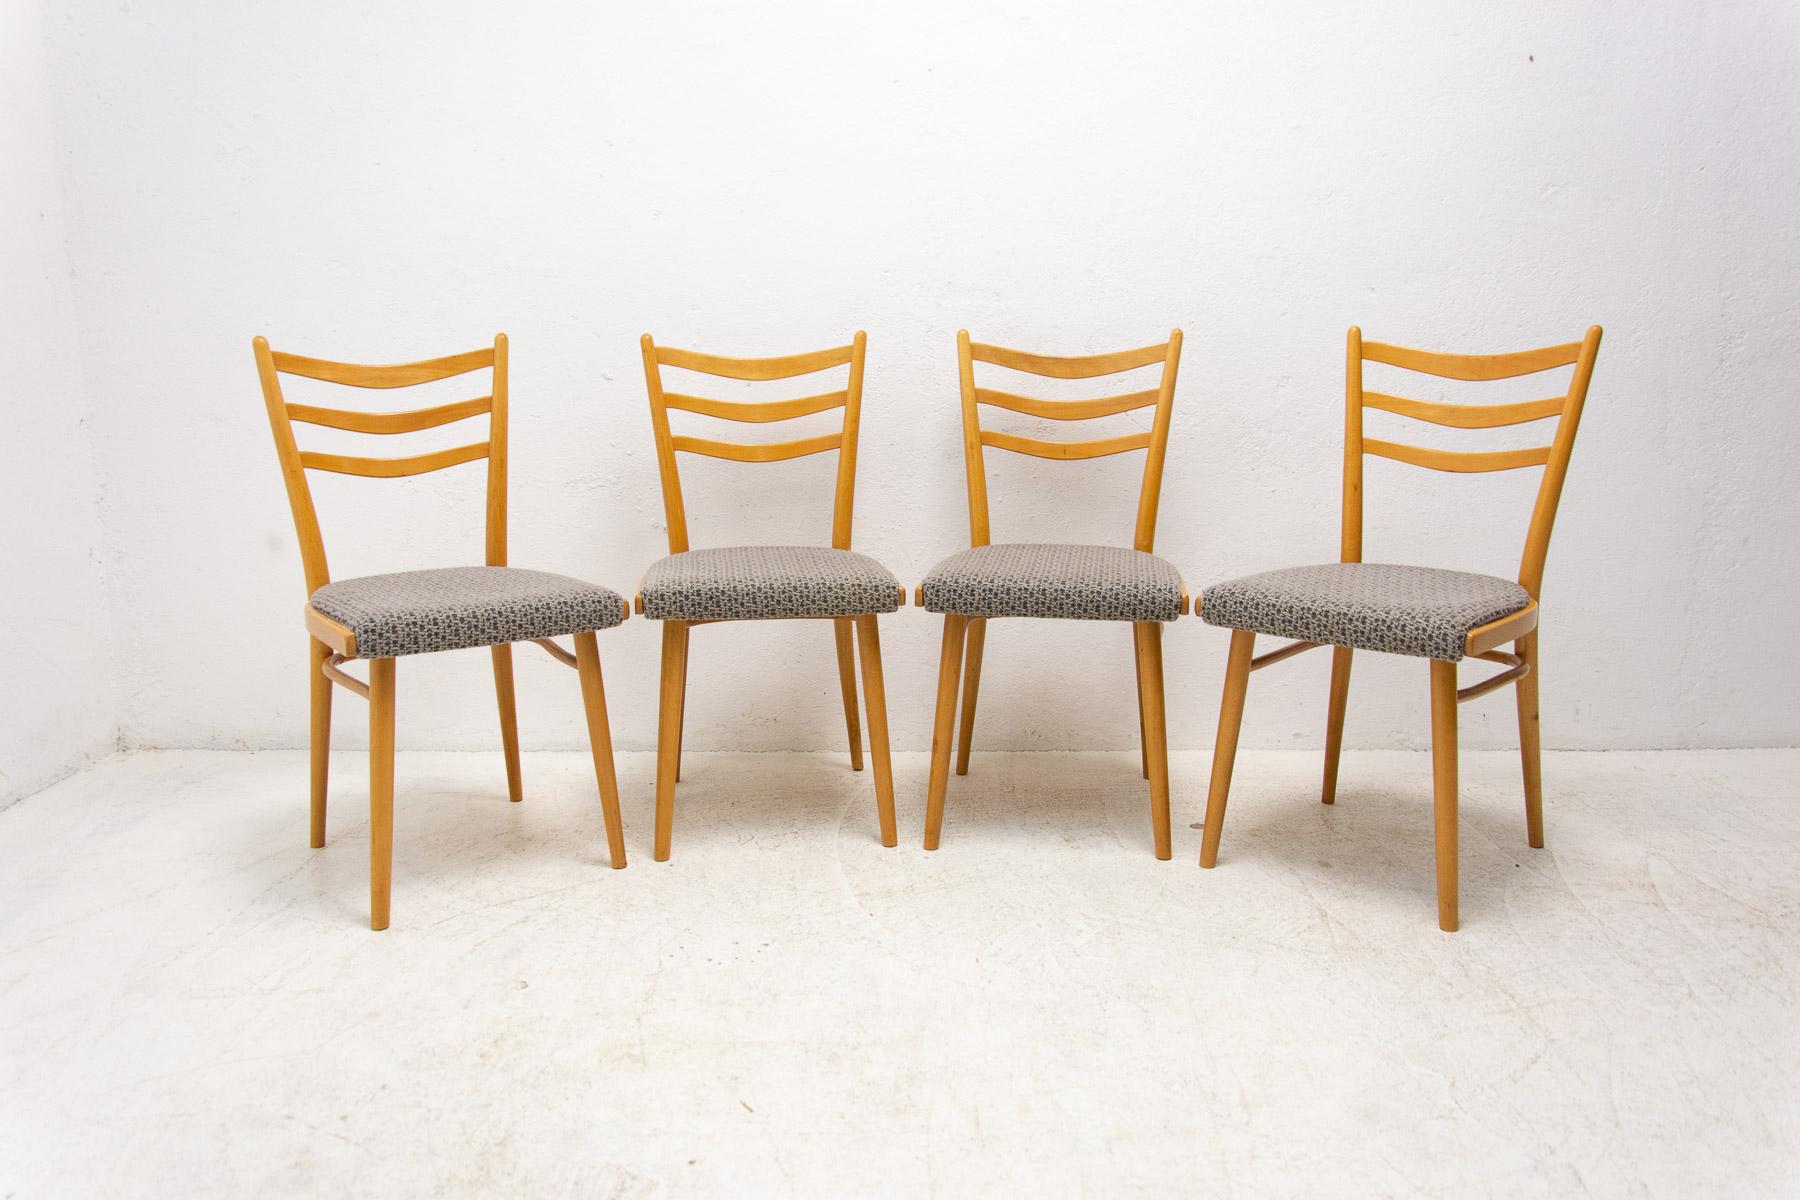 Ensemble de quatre chaises de salle à manger rembourrées, fabriquées dans l'ancienne Tchécoslovaquie par la société Jitona dans les années 1960. Les chaises sont fabriquées en bois de hêtre. Un façonnage très intéressant. La tapisserie et le bois